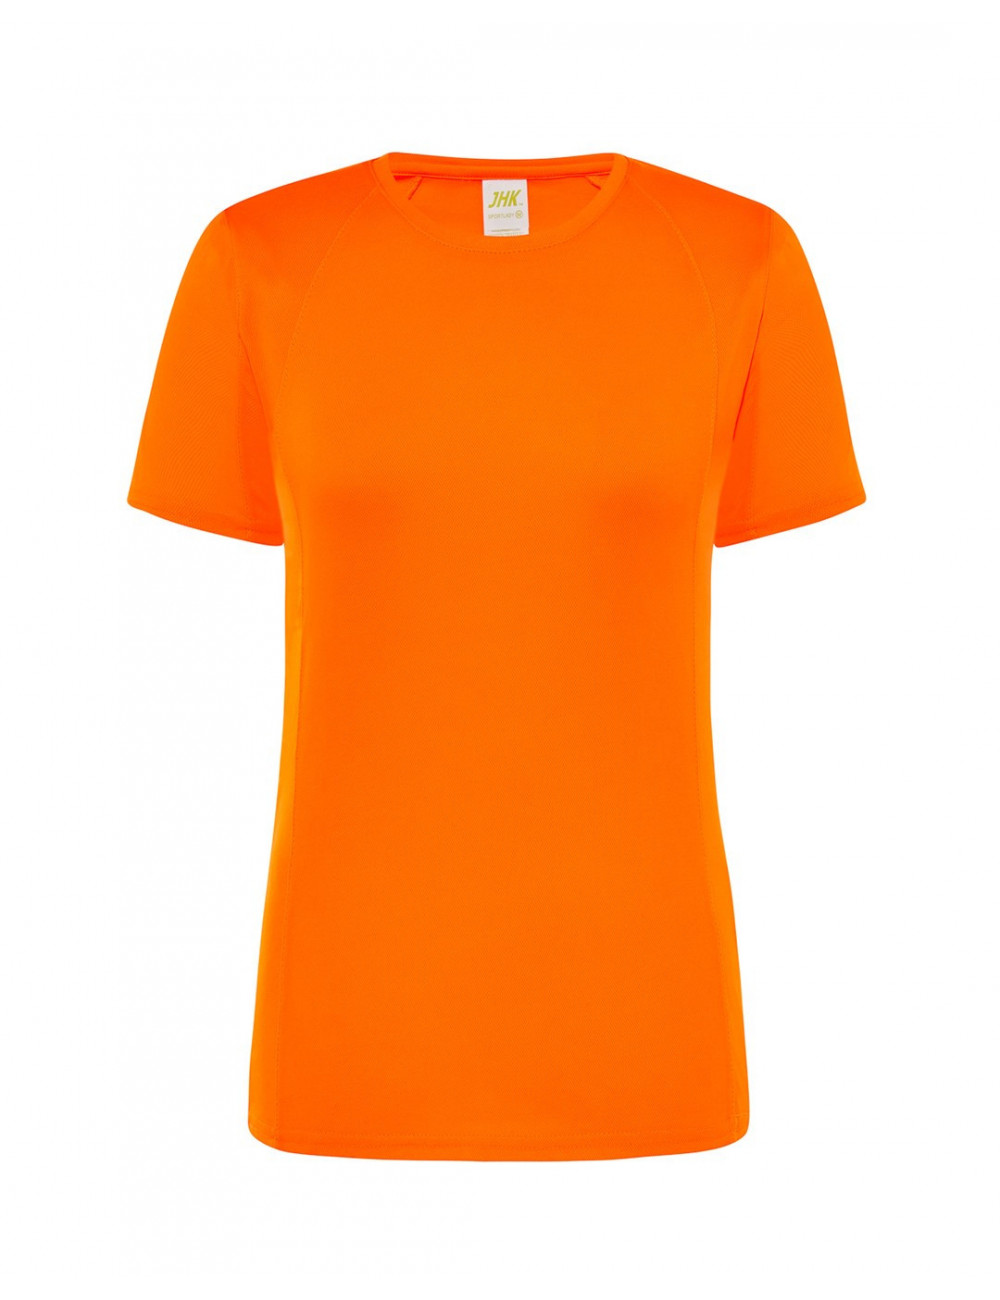 Women`s t-shirt sport lady fluoro orange Jhk